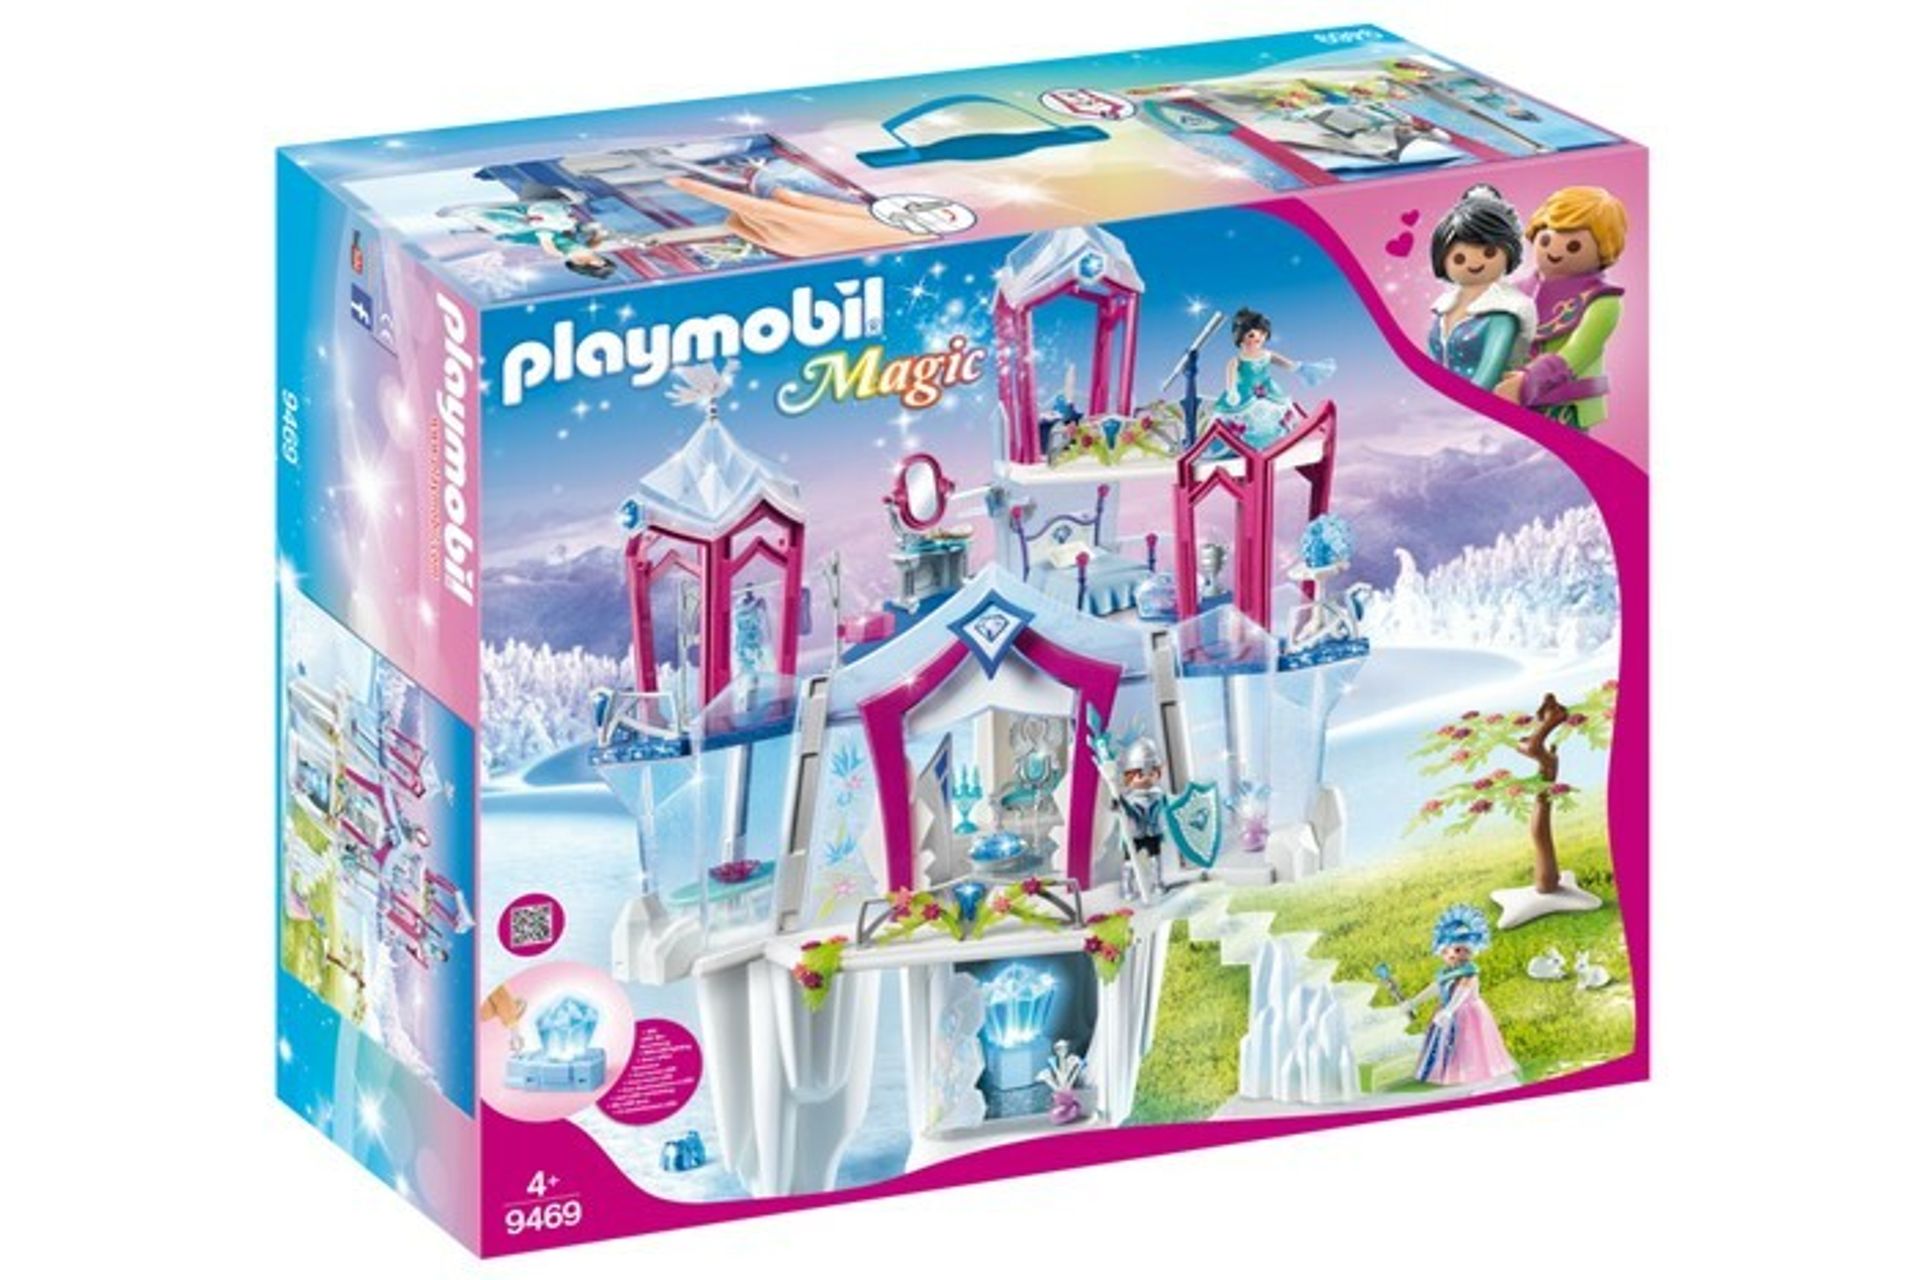 Playmobil magic ice palace - 2019 top toys